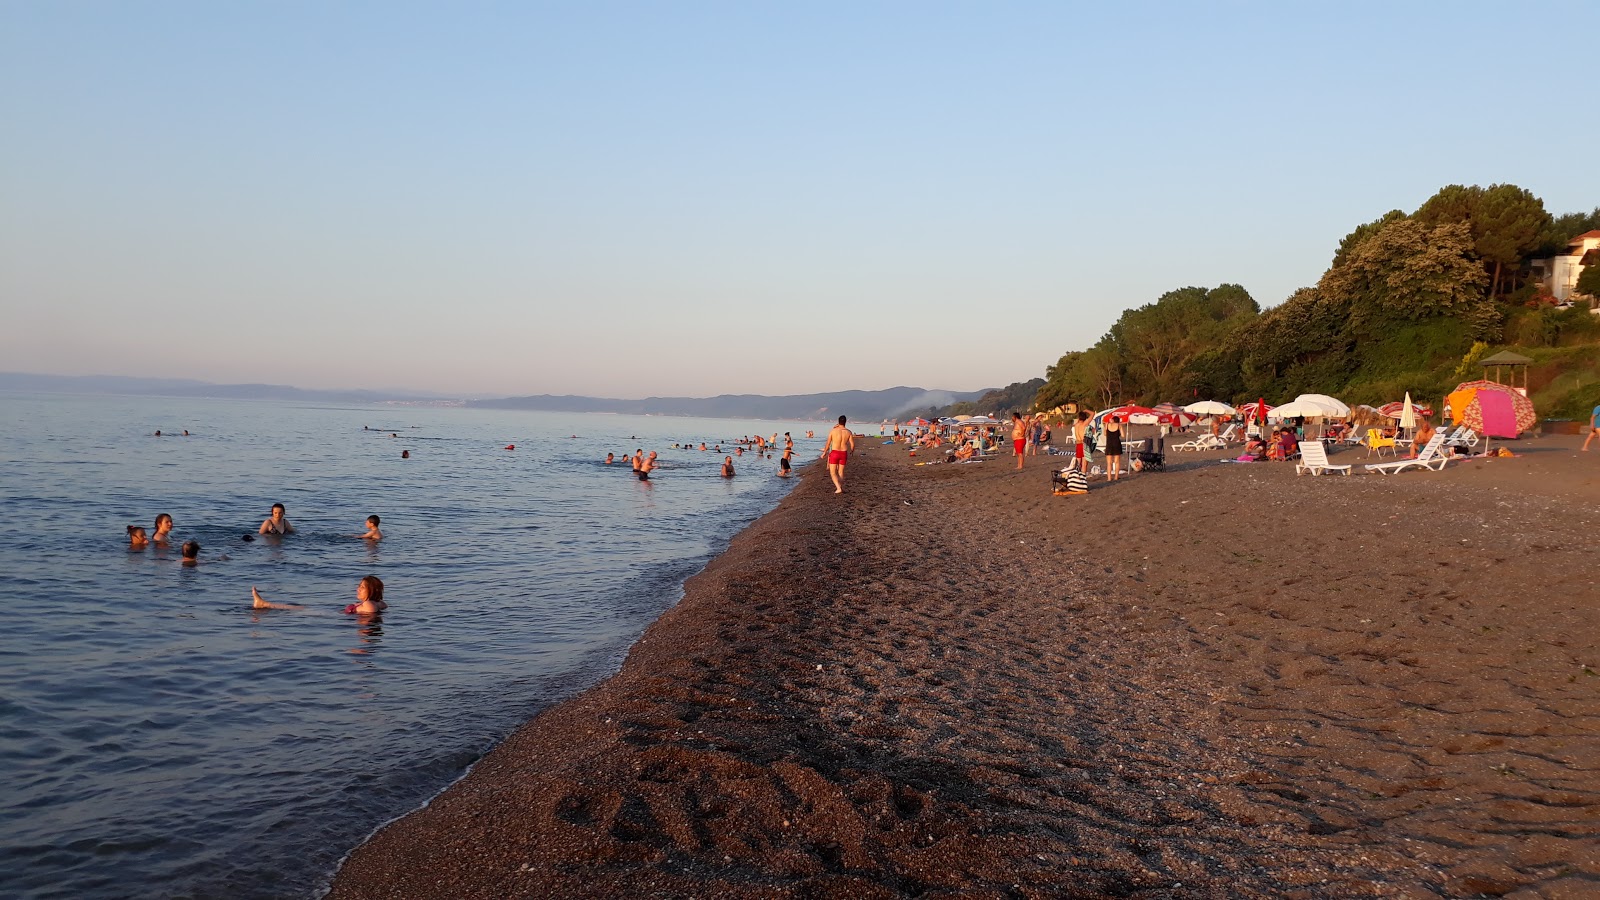 Foto av Kemos Aile Plaji med turkos rent vatten yta